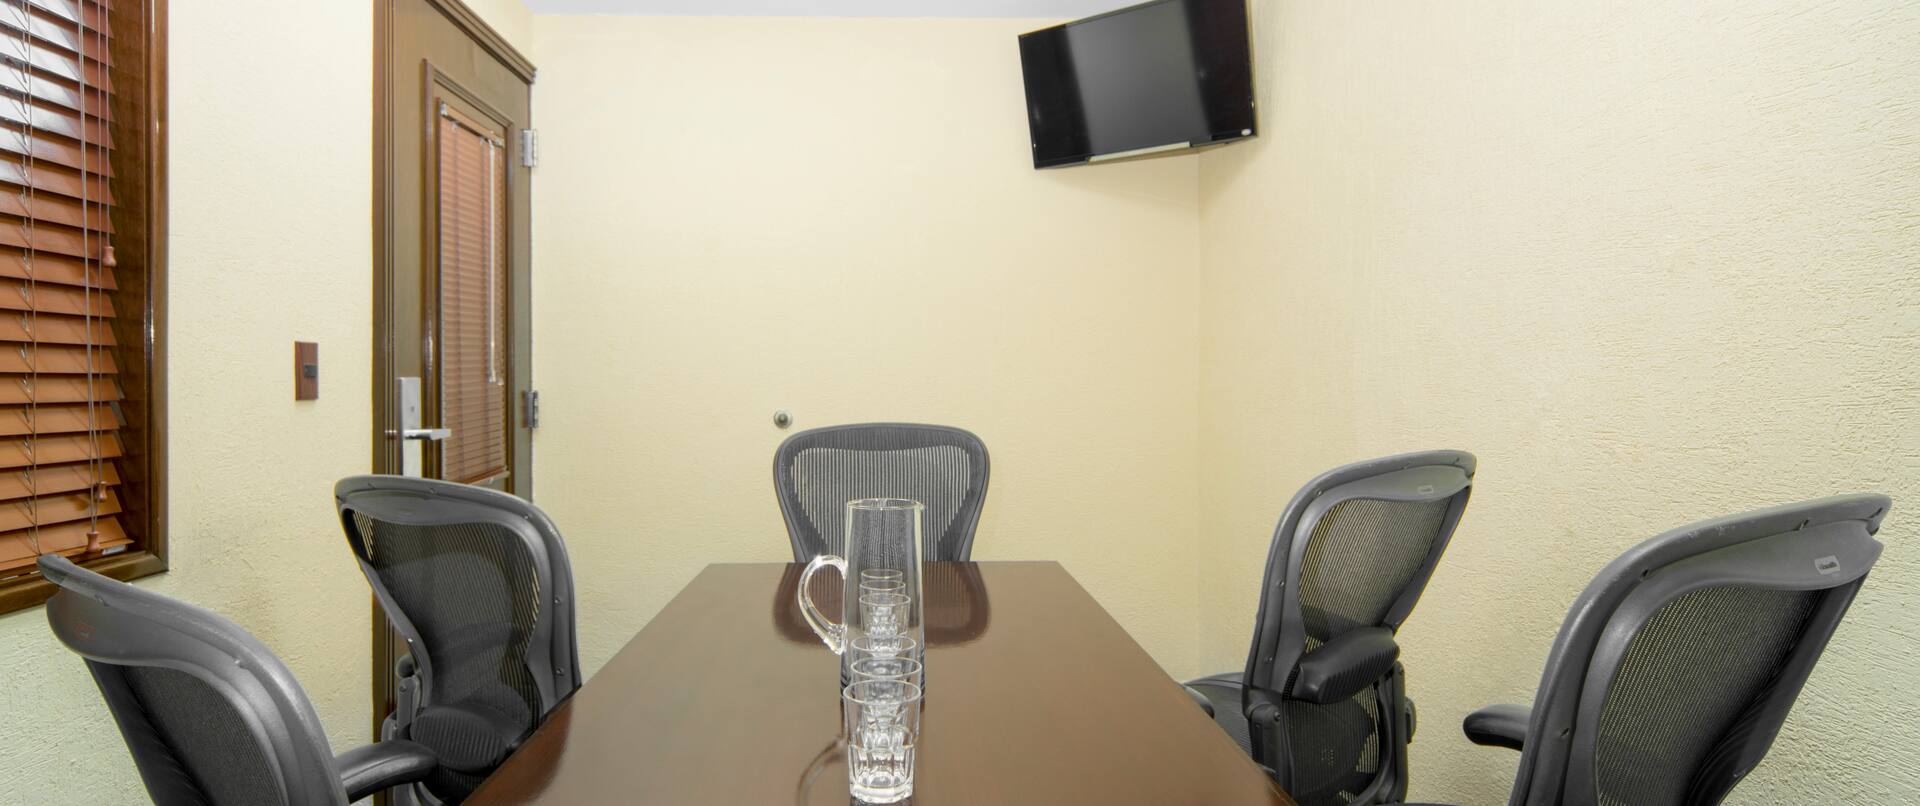 Sala de juntas con mesa de reuniones, sillas de oficina y televisor de alta definición montado en la pared